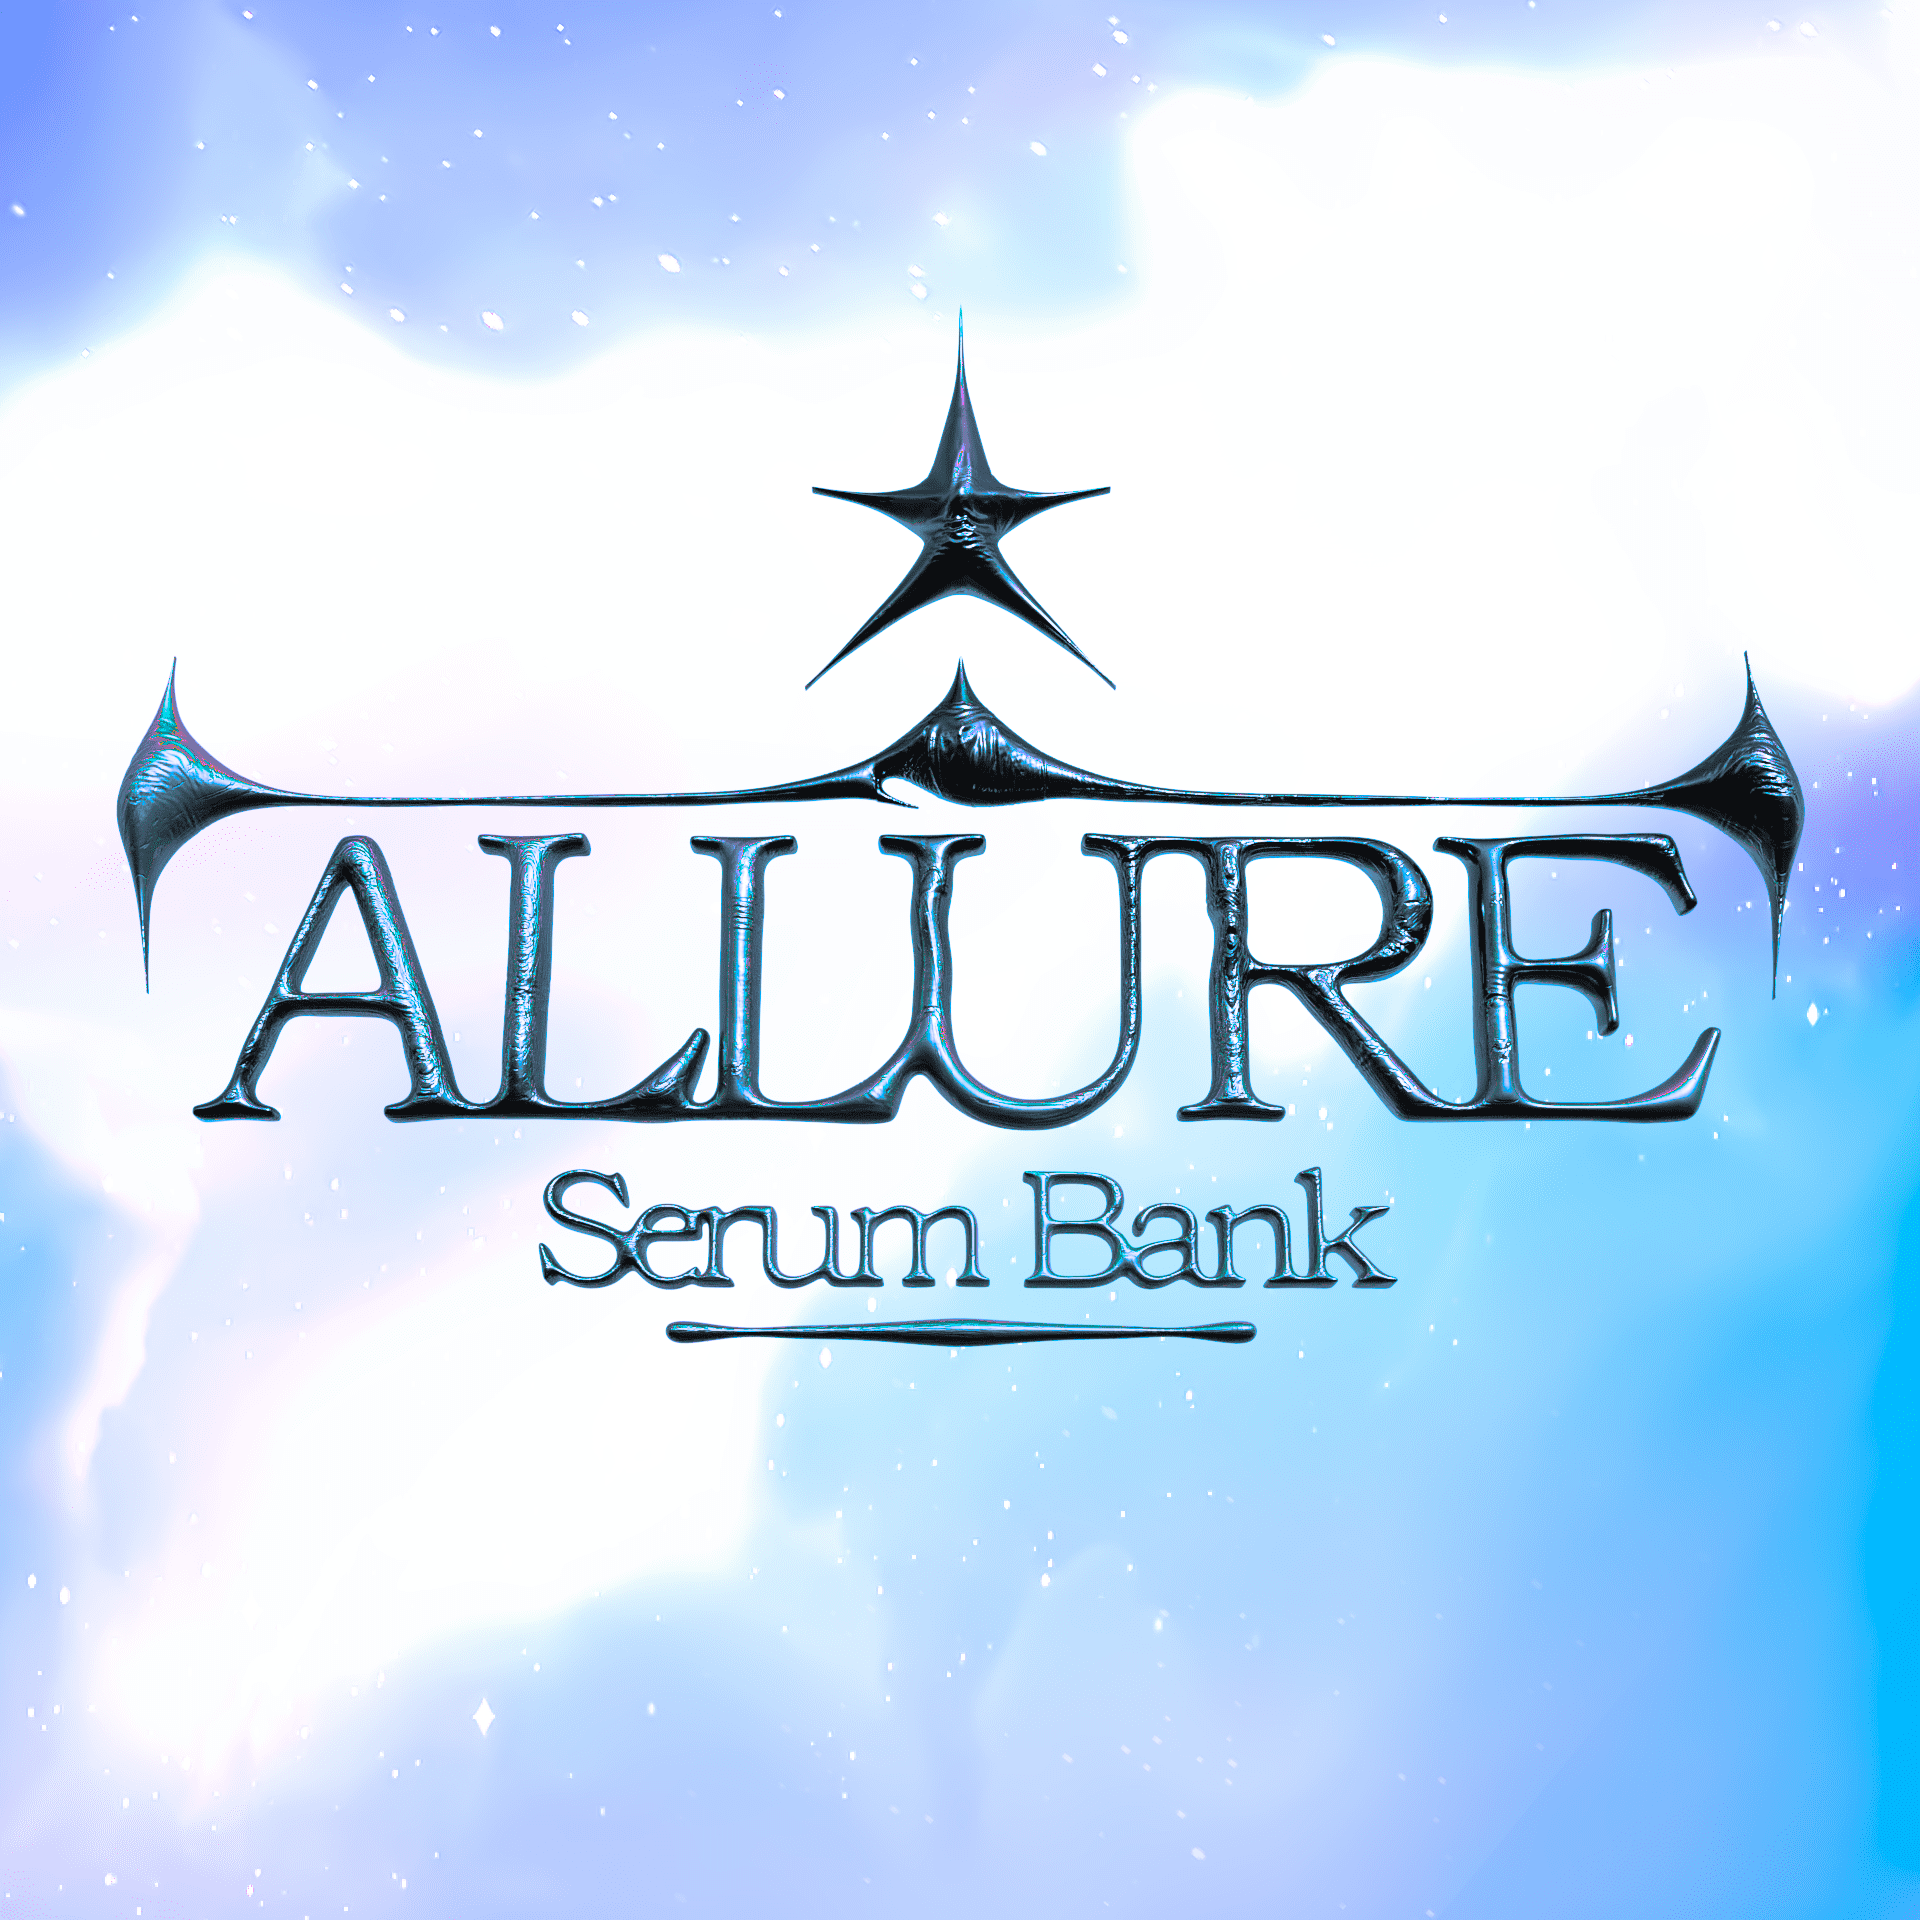 ALLURE Serum Bank